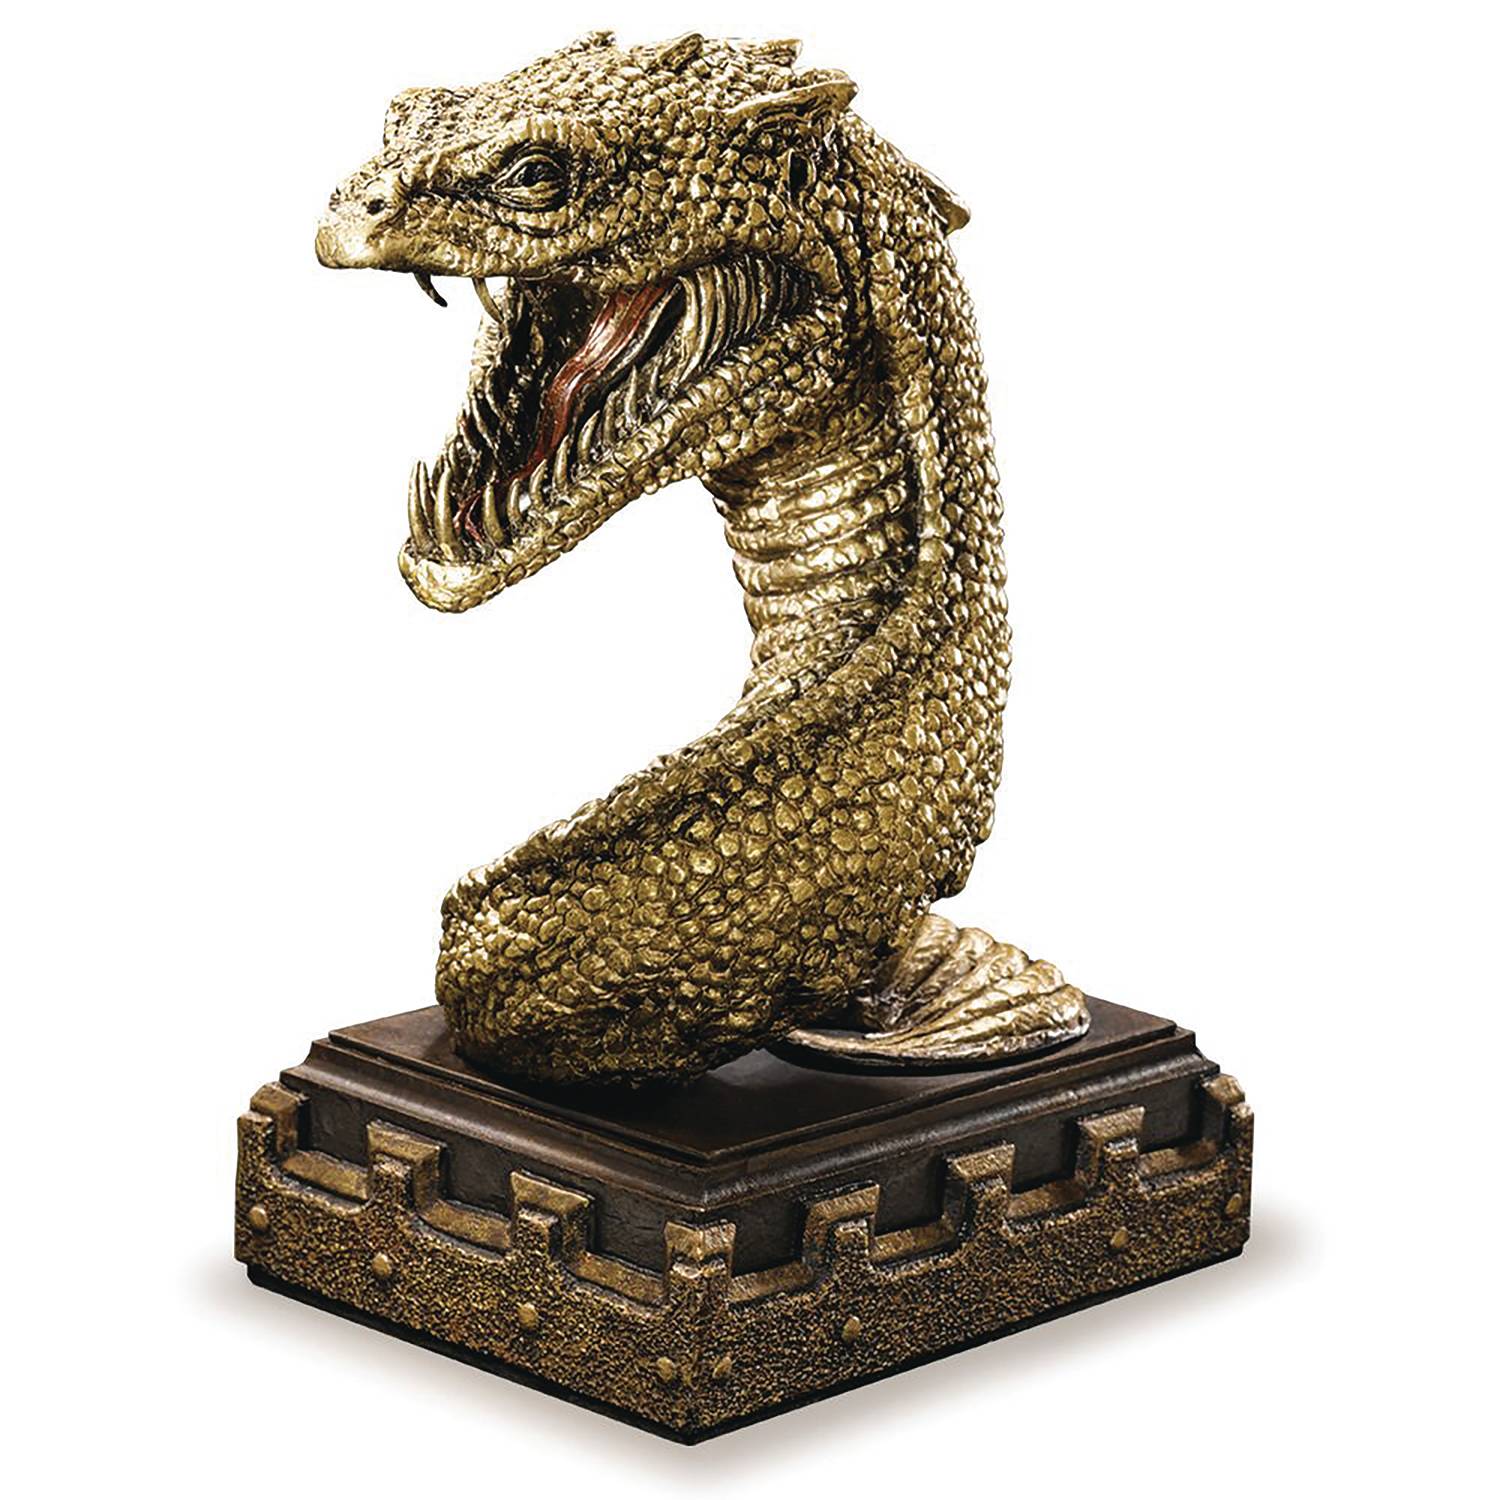 Snake, Harry Potter (Basilisk) : Part basilisk